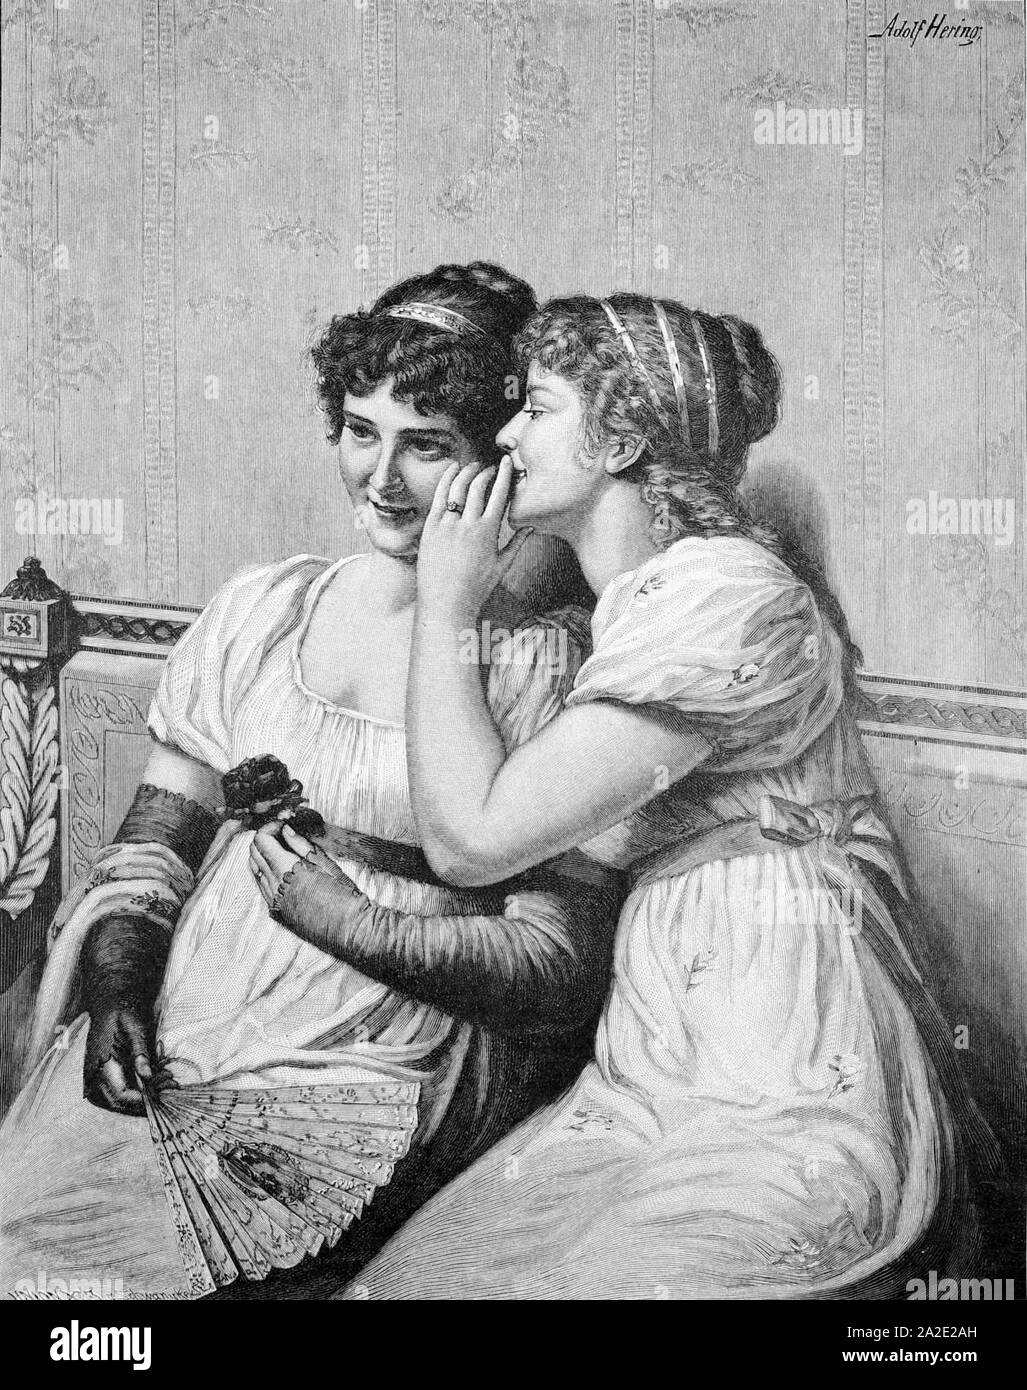 Ein süßes Geheimnis von Adolf Hering, 1892. Stock Photo